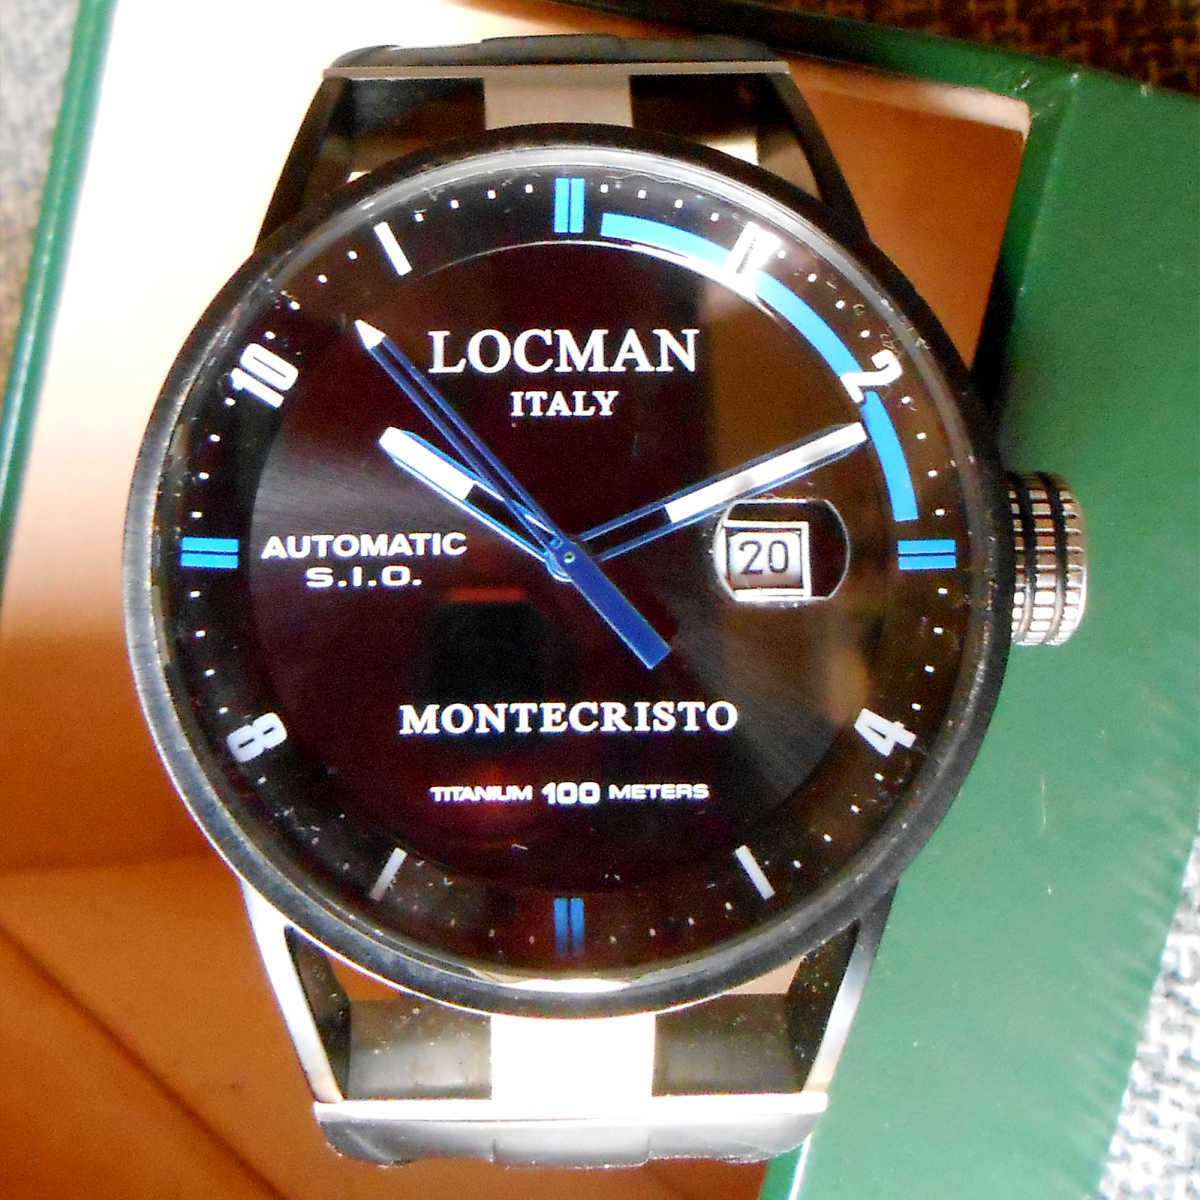 【送料無料】ロックマン モンテクリスト 自動巻 LOCMAN Montecristo Automatic Watch Ref. 511 TITANIUM 44mm 051100BKFBL0